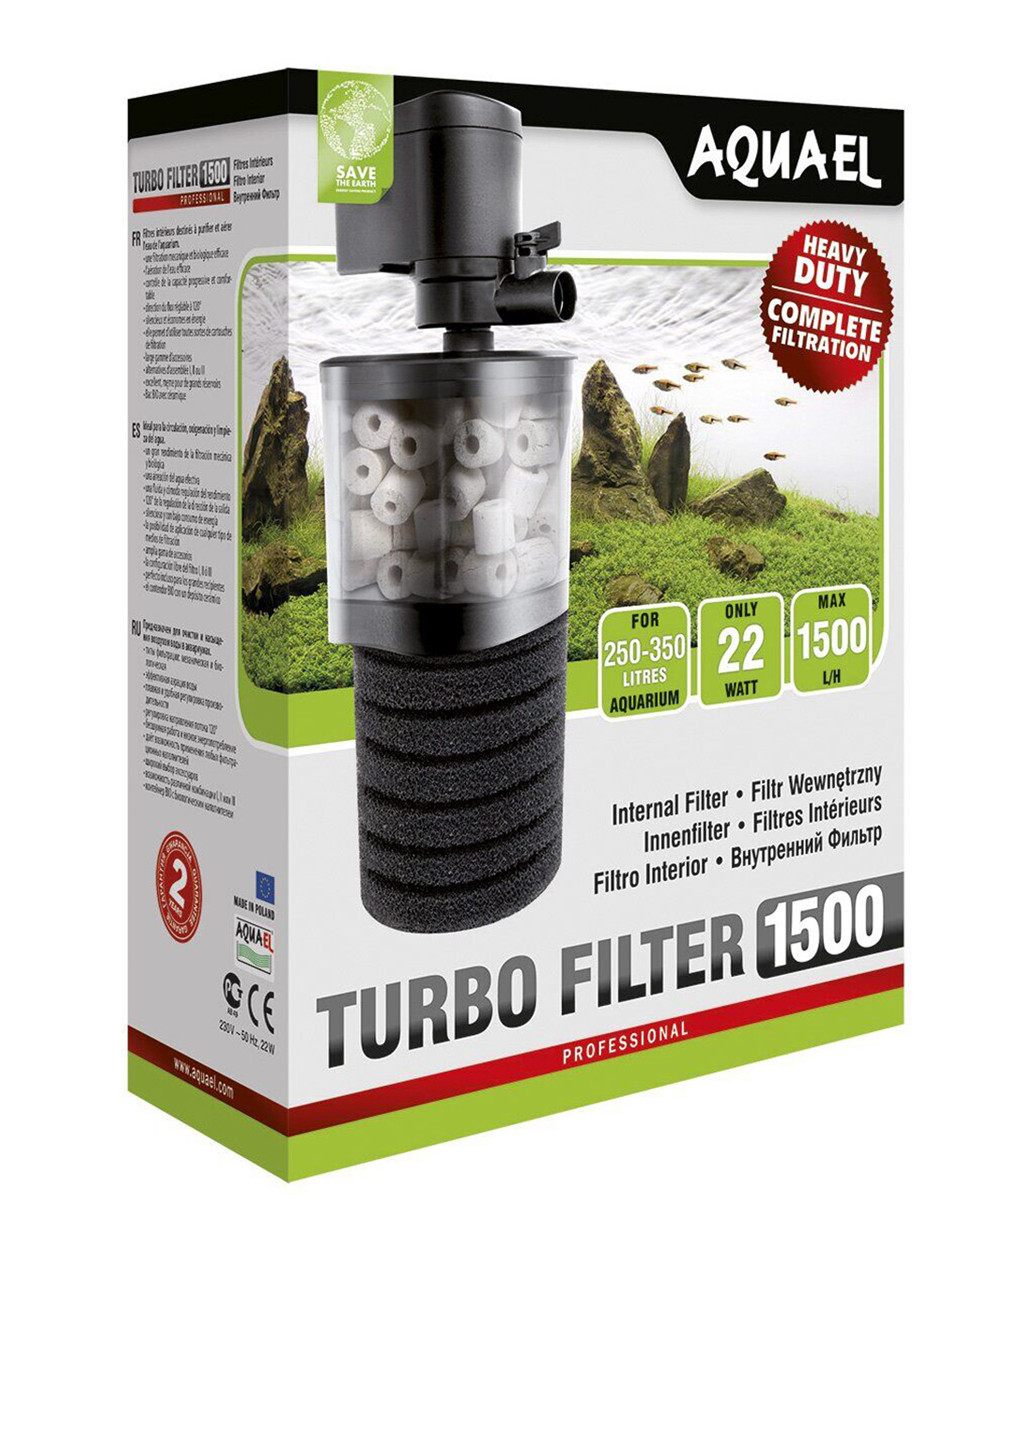 Внутренний фильтр Turbo Filter 1500 (250-350 л) Aquael (201658279)